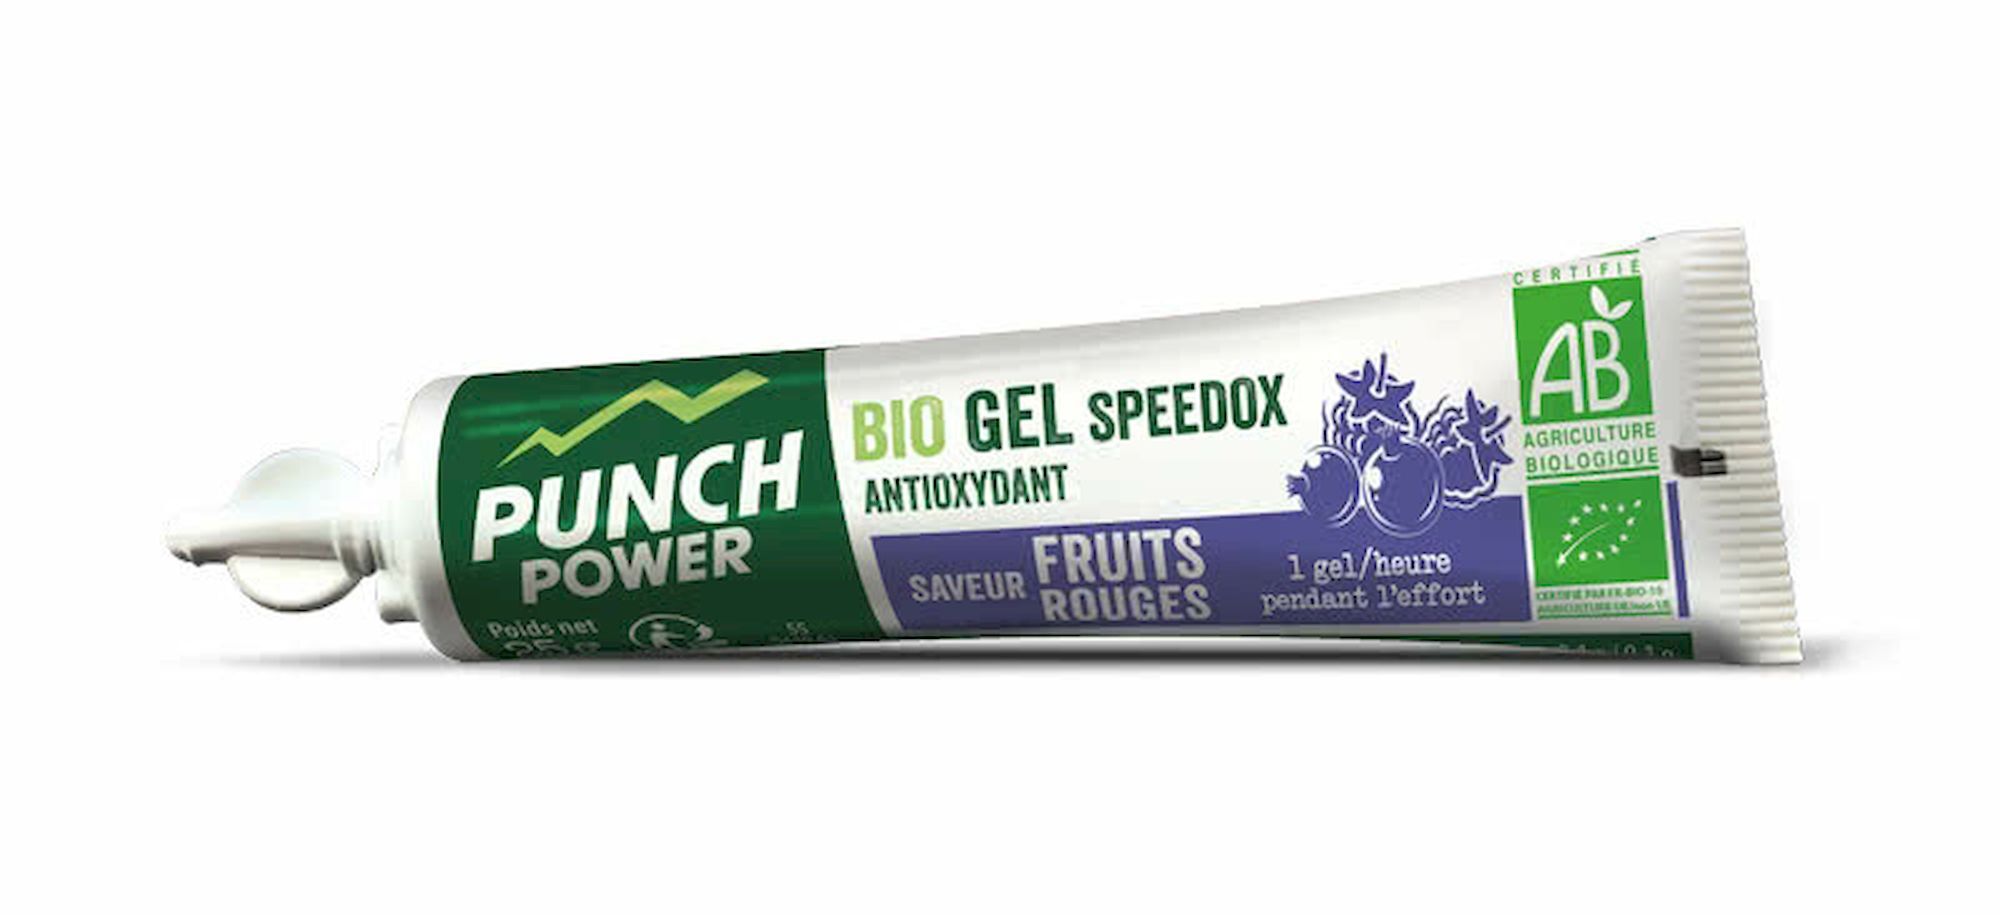 Punch Power Speedox Fruits Rouges x 6 - Energetický gel | Hardloop